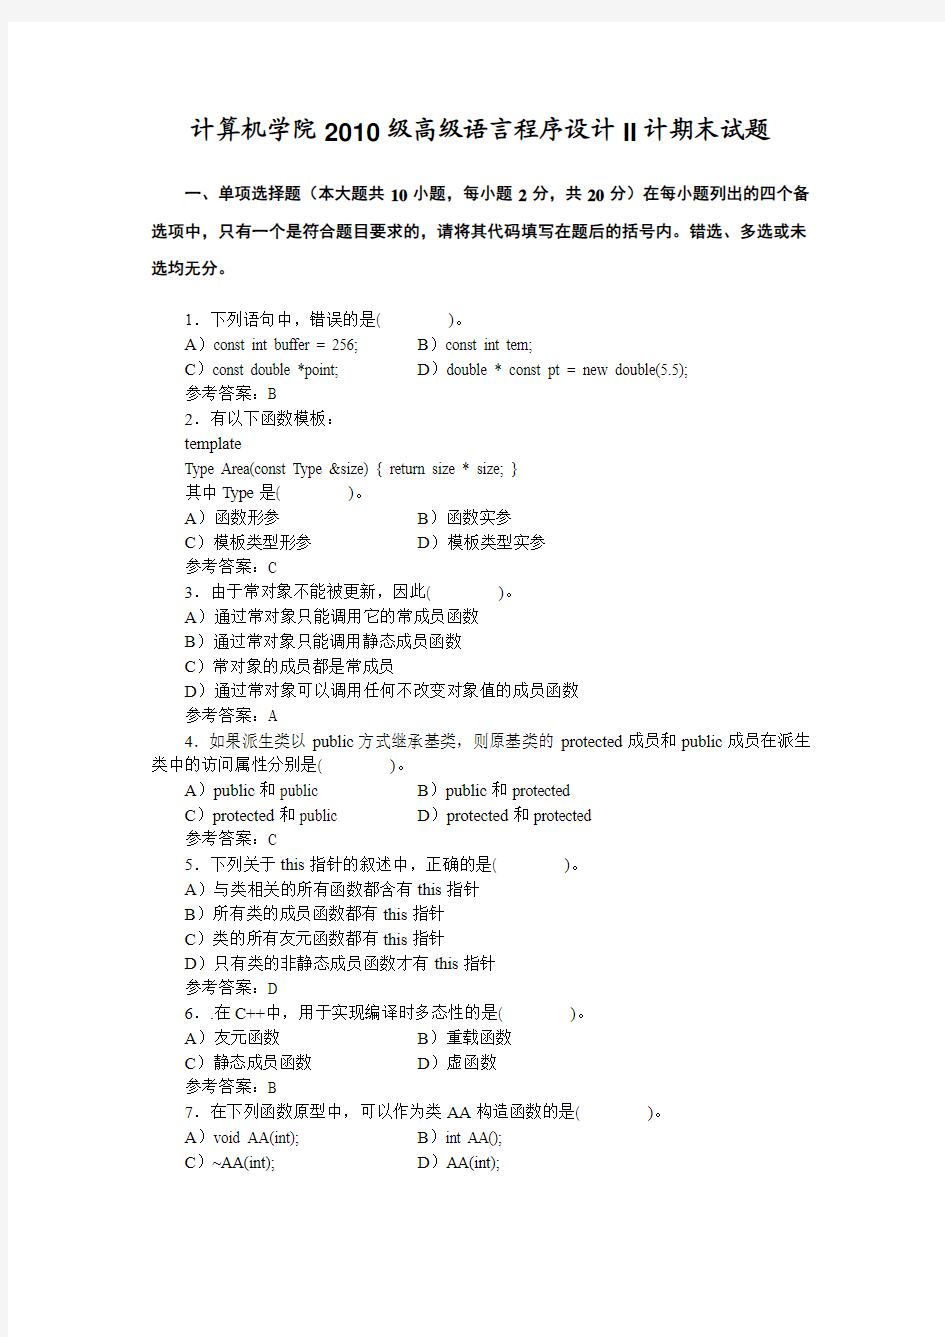 四川大学电子信息学院卓越工程师班高级语言程序设计II考试试题B(2011)